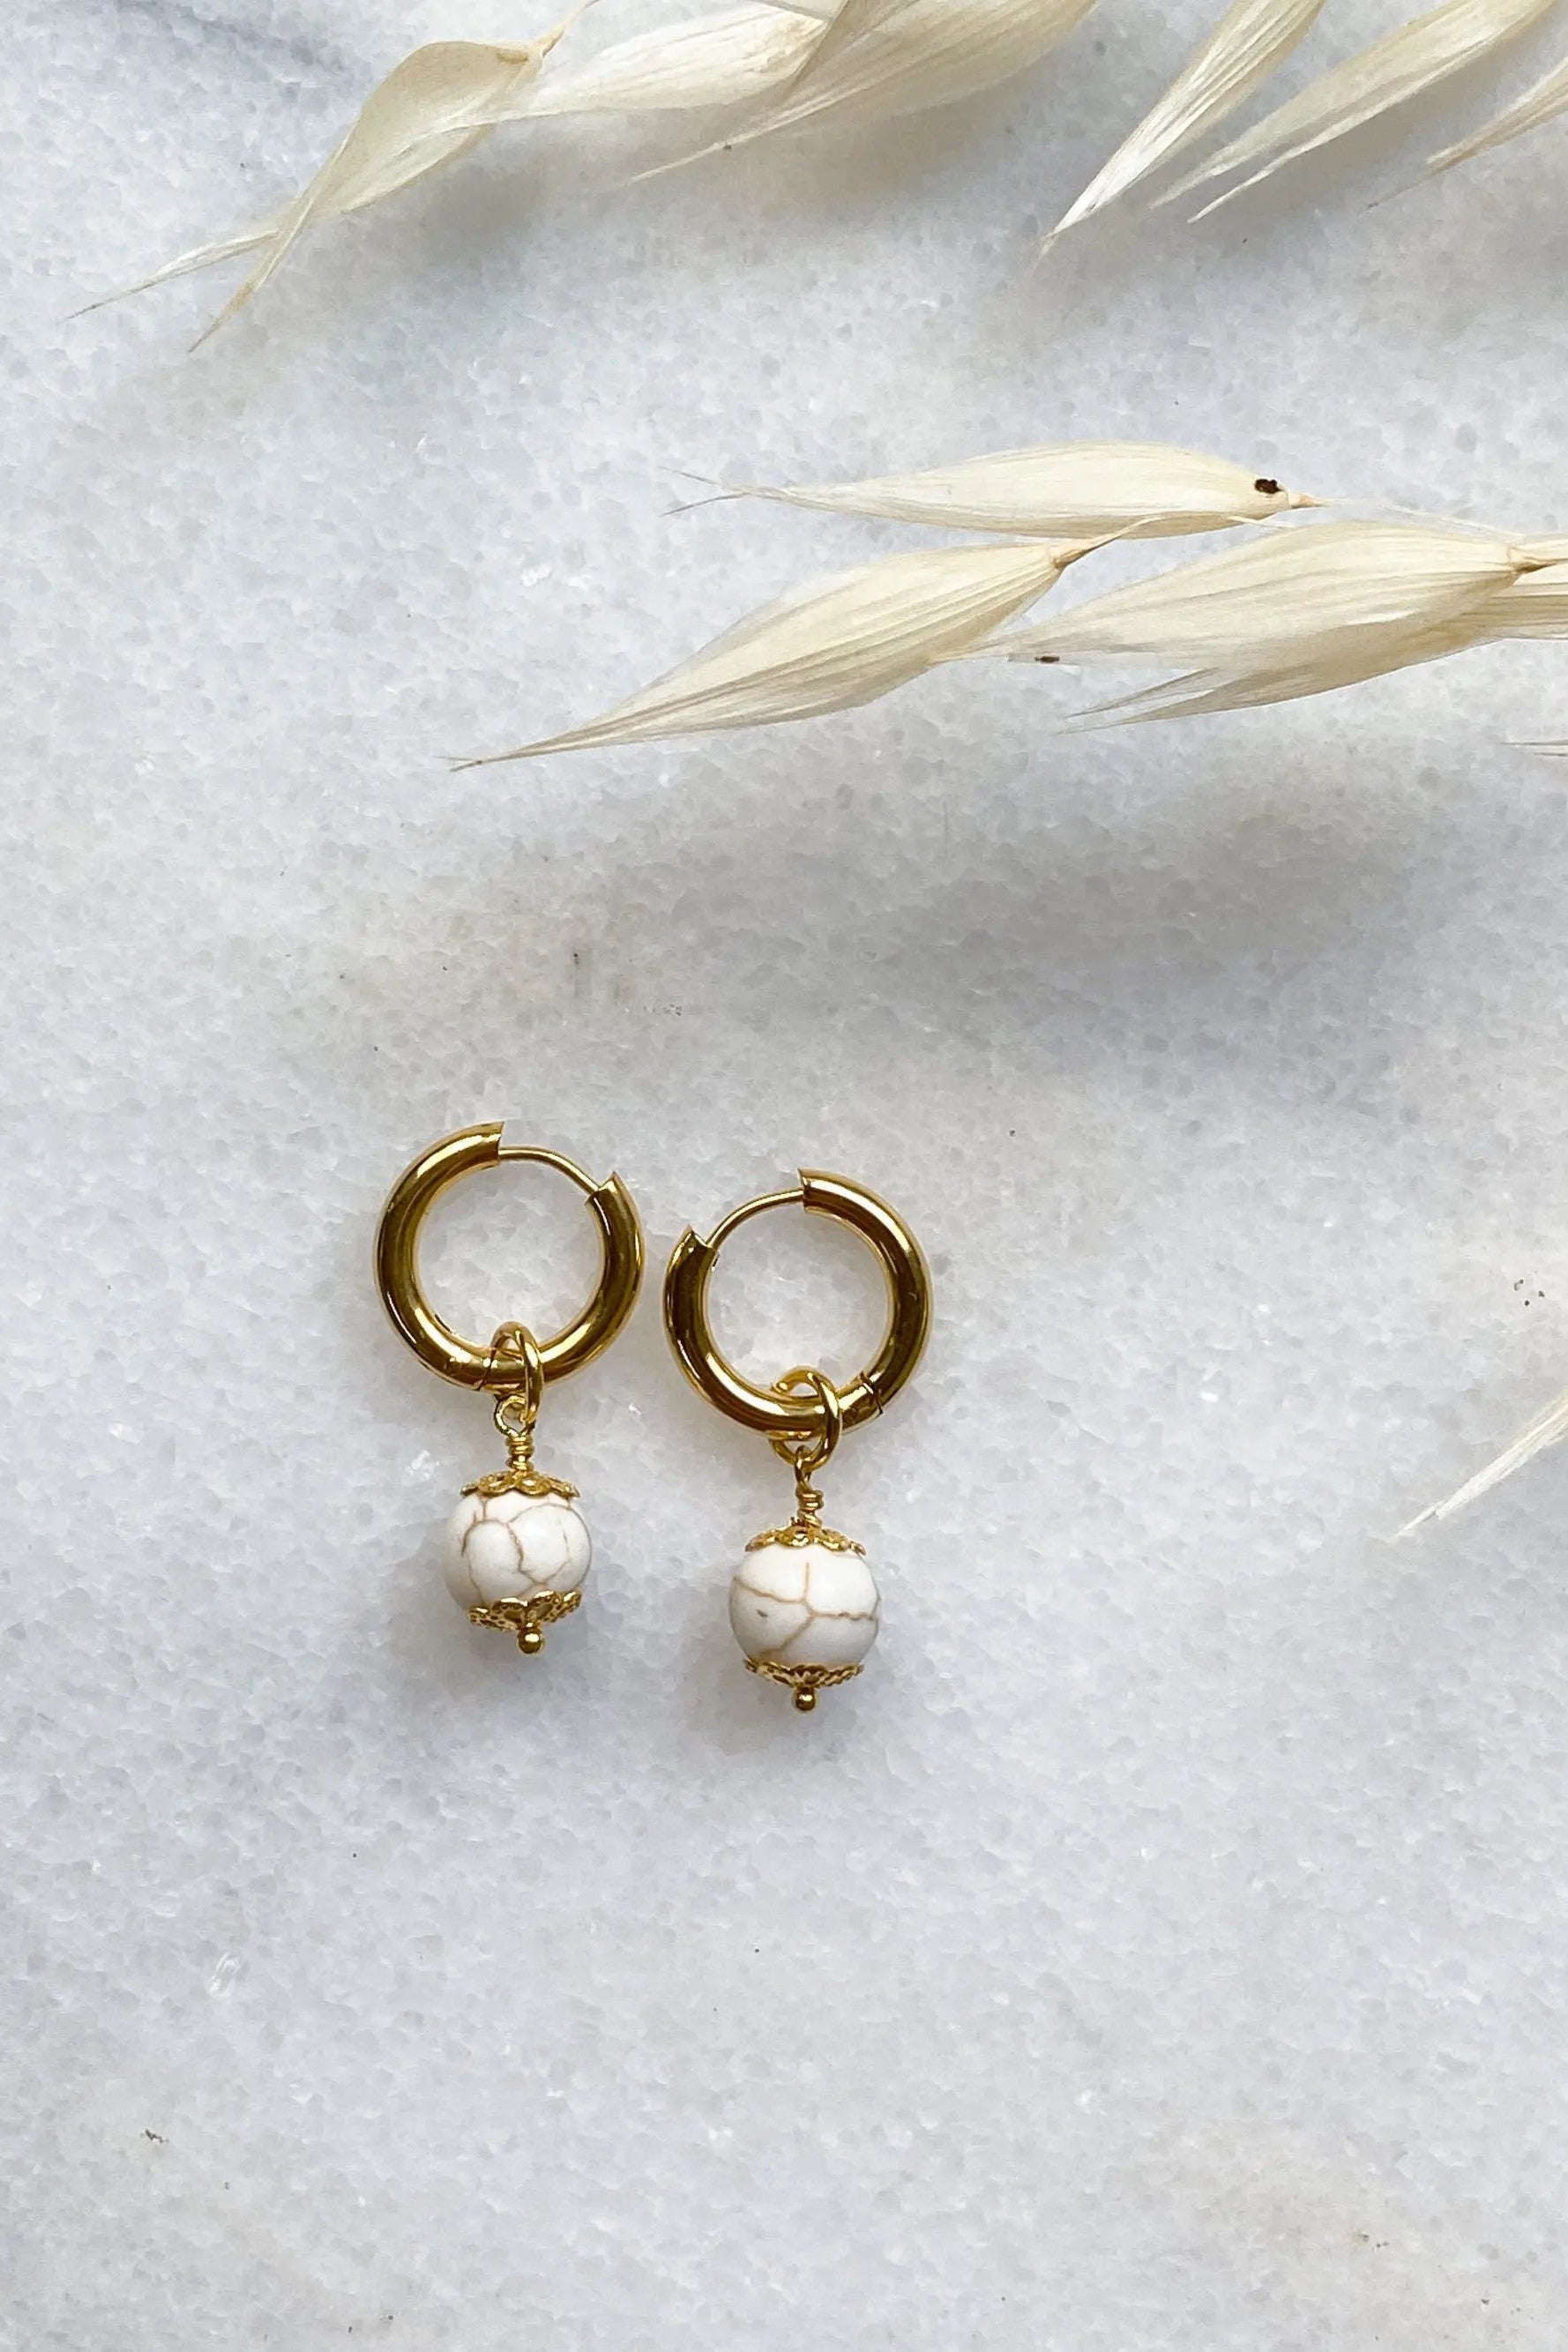 SORAYA Medium Huggie Hoop Earrings with gem charms, Gold Hoop Earrings, Minimalist cute earrings, Boho chic howlite earrings, Gift for her